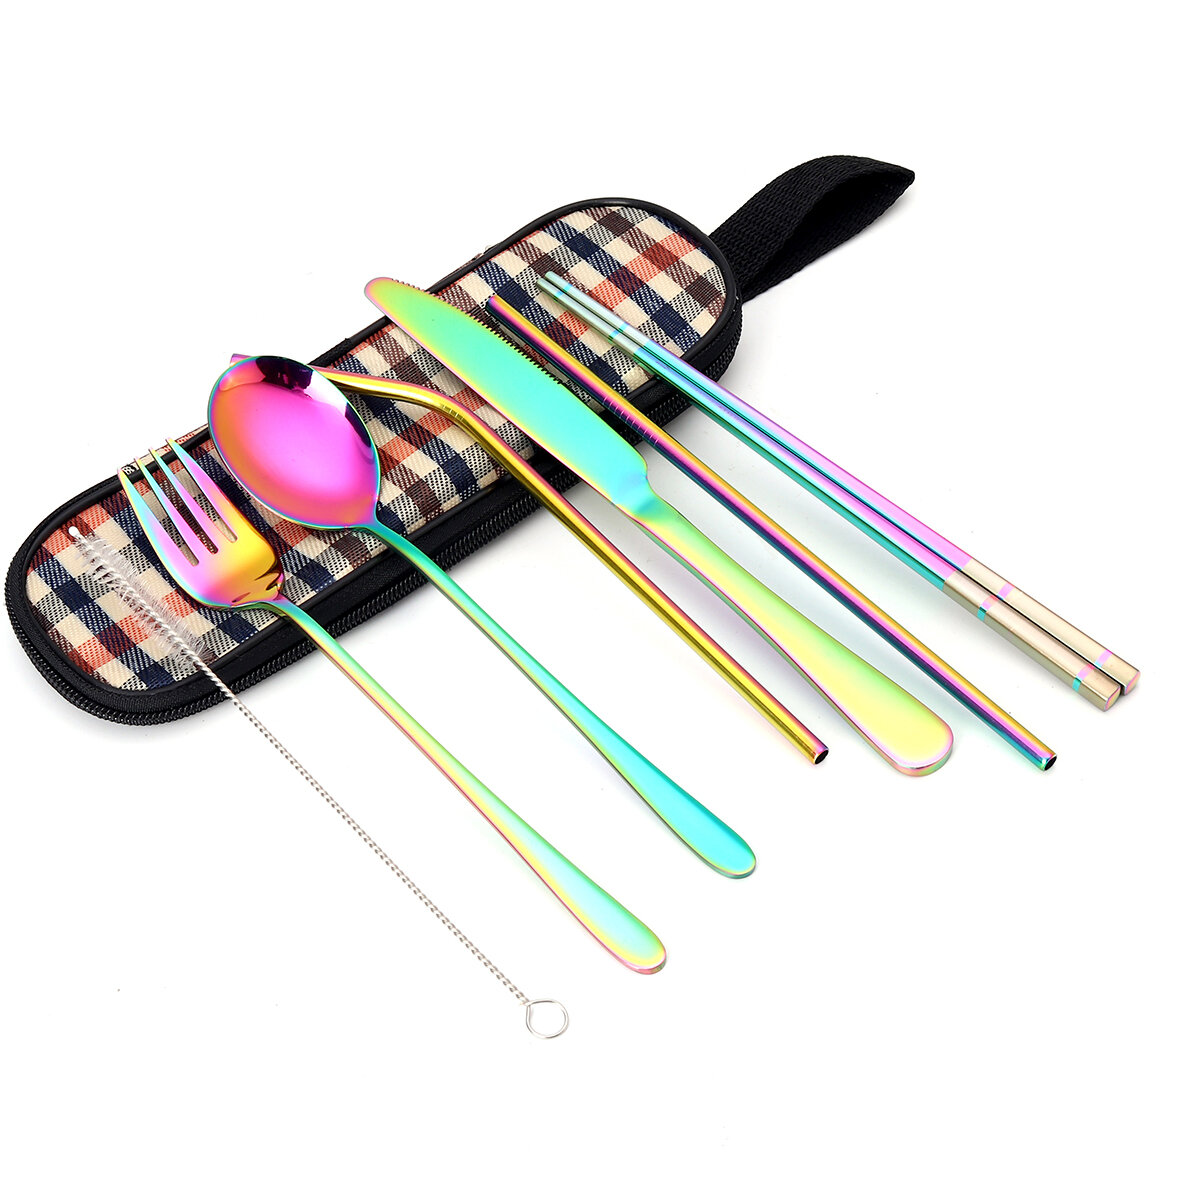 Set di posate in acciaio inox da 8 pezzi: coltelli, forchette, cucchiai, adatti per l'uso all'aperto, con borsa per il trasporto inclusa.